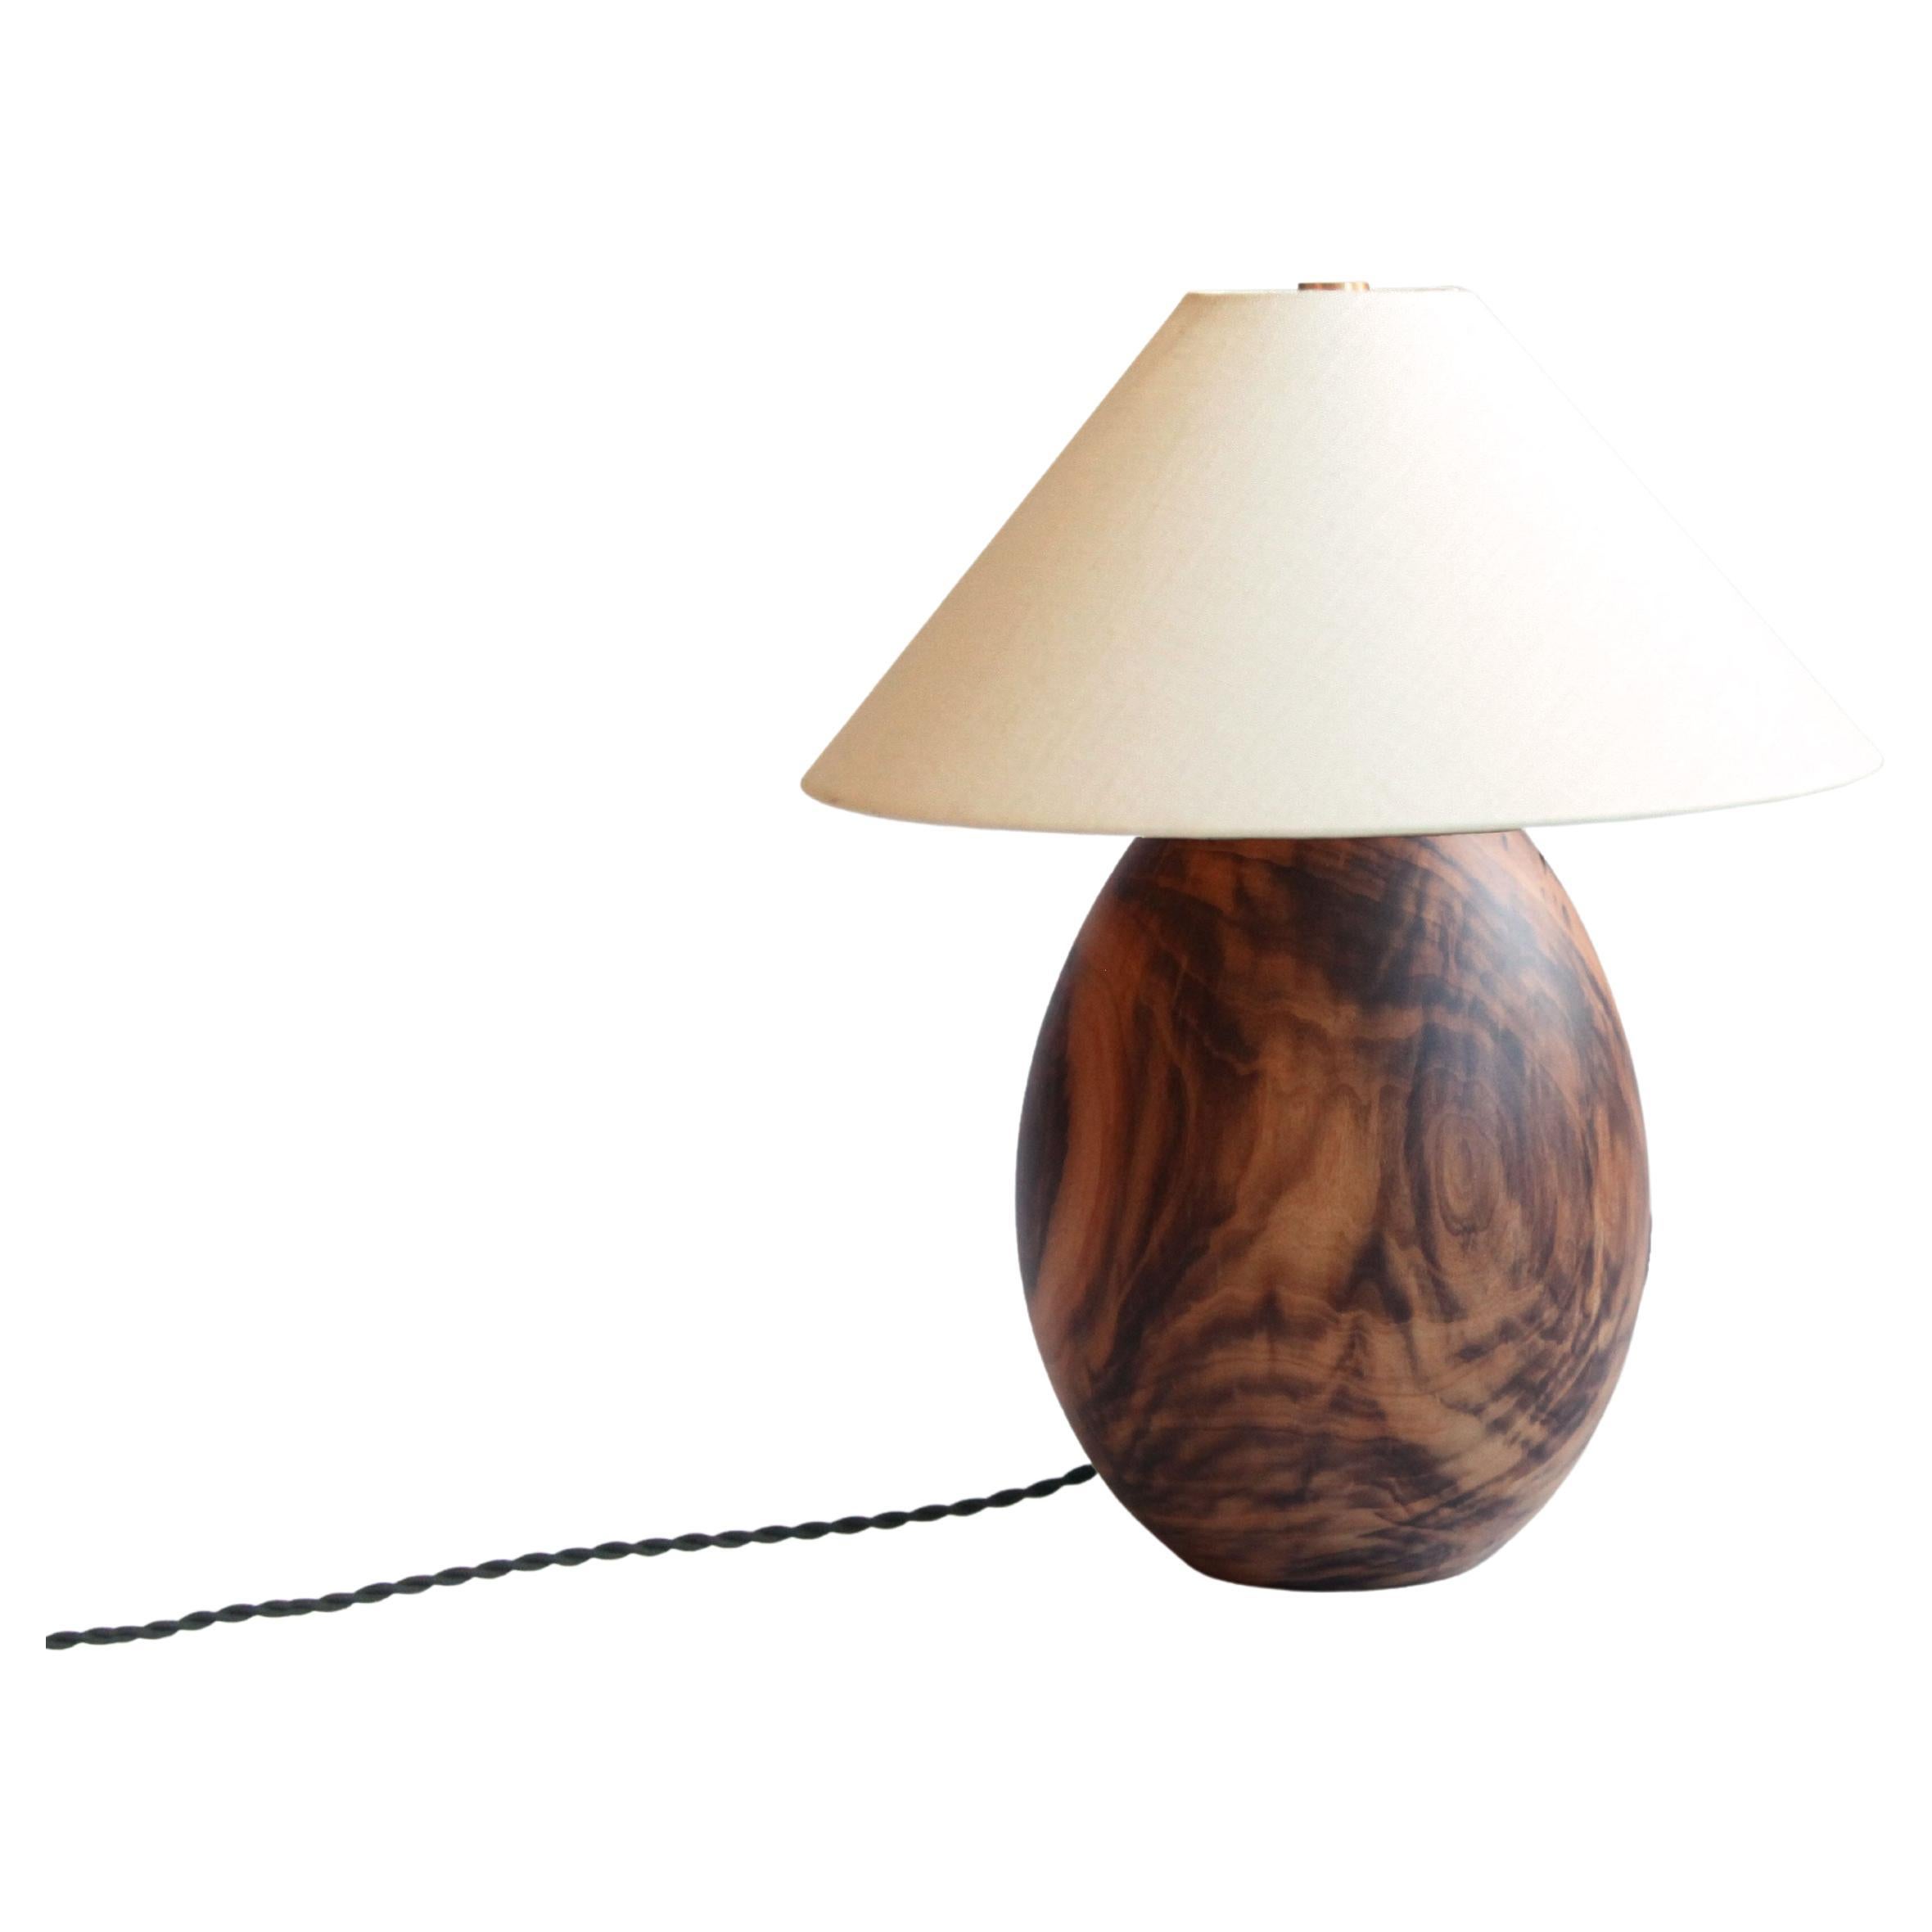 Lampe en bois dur tropical et abat-jour en lin blanc, petite, Collection Árbol, 18